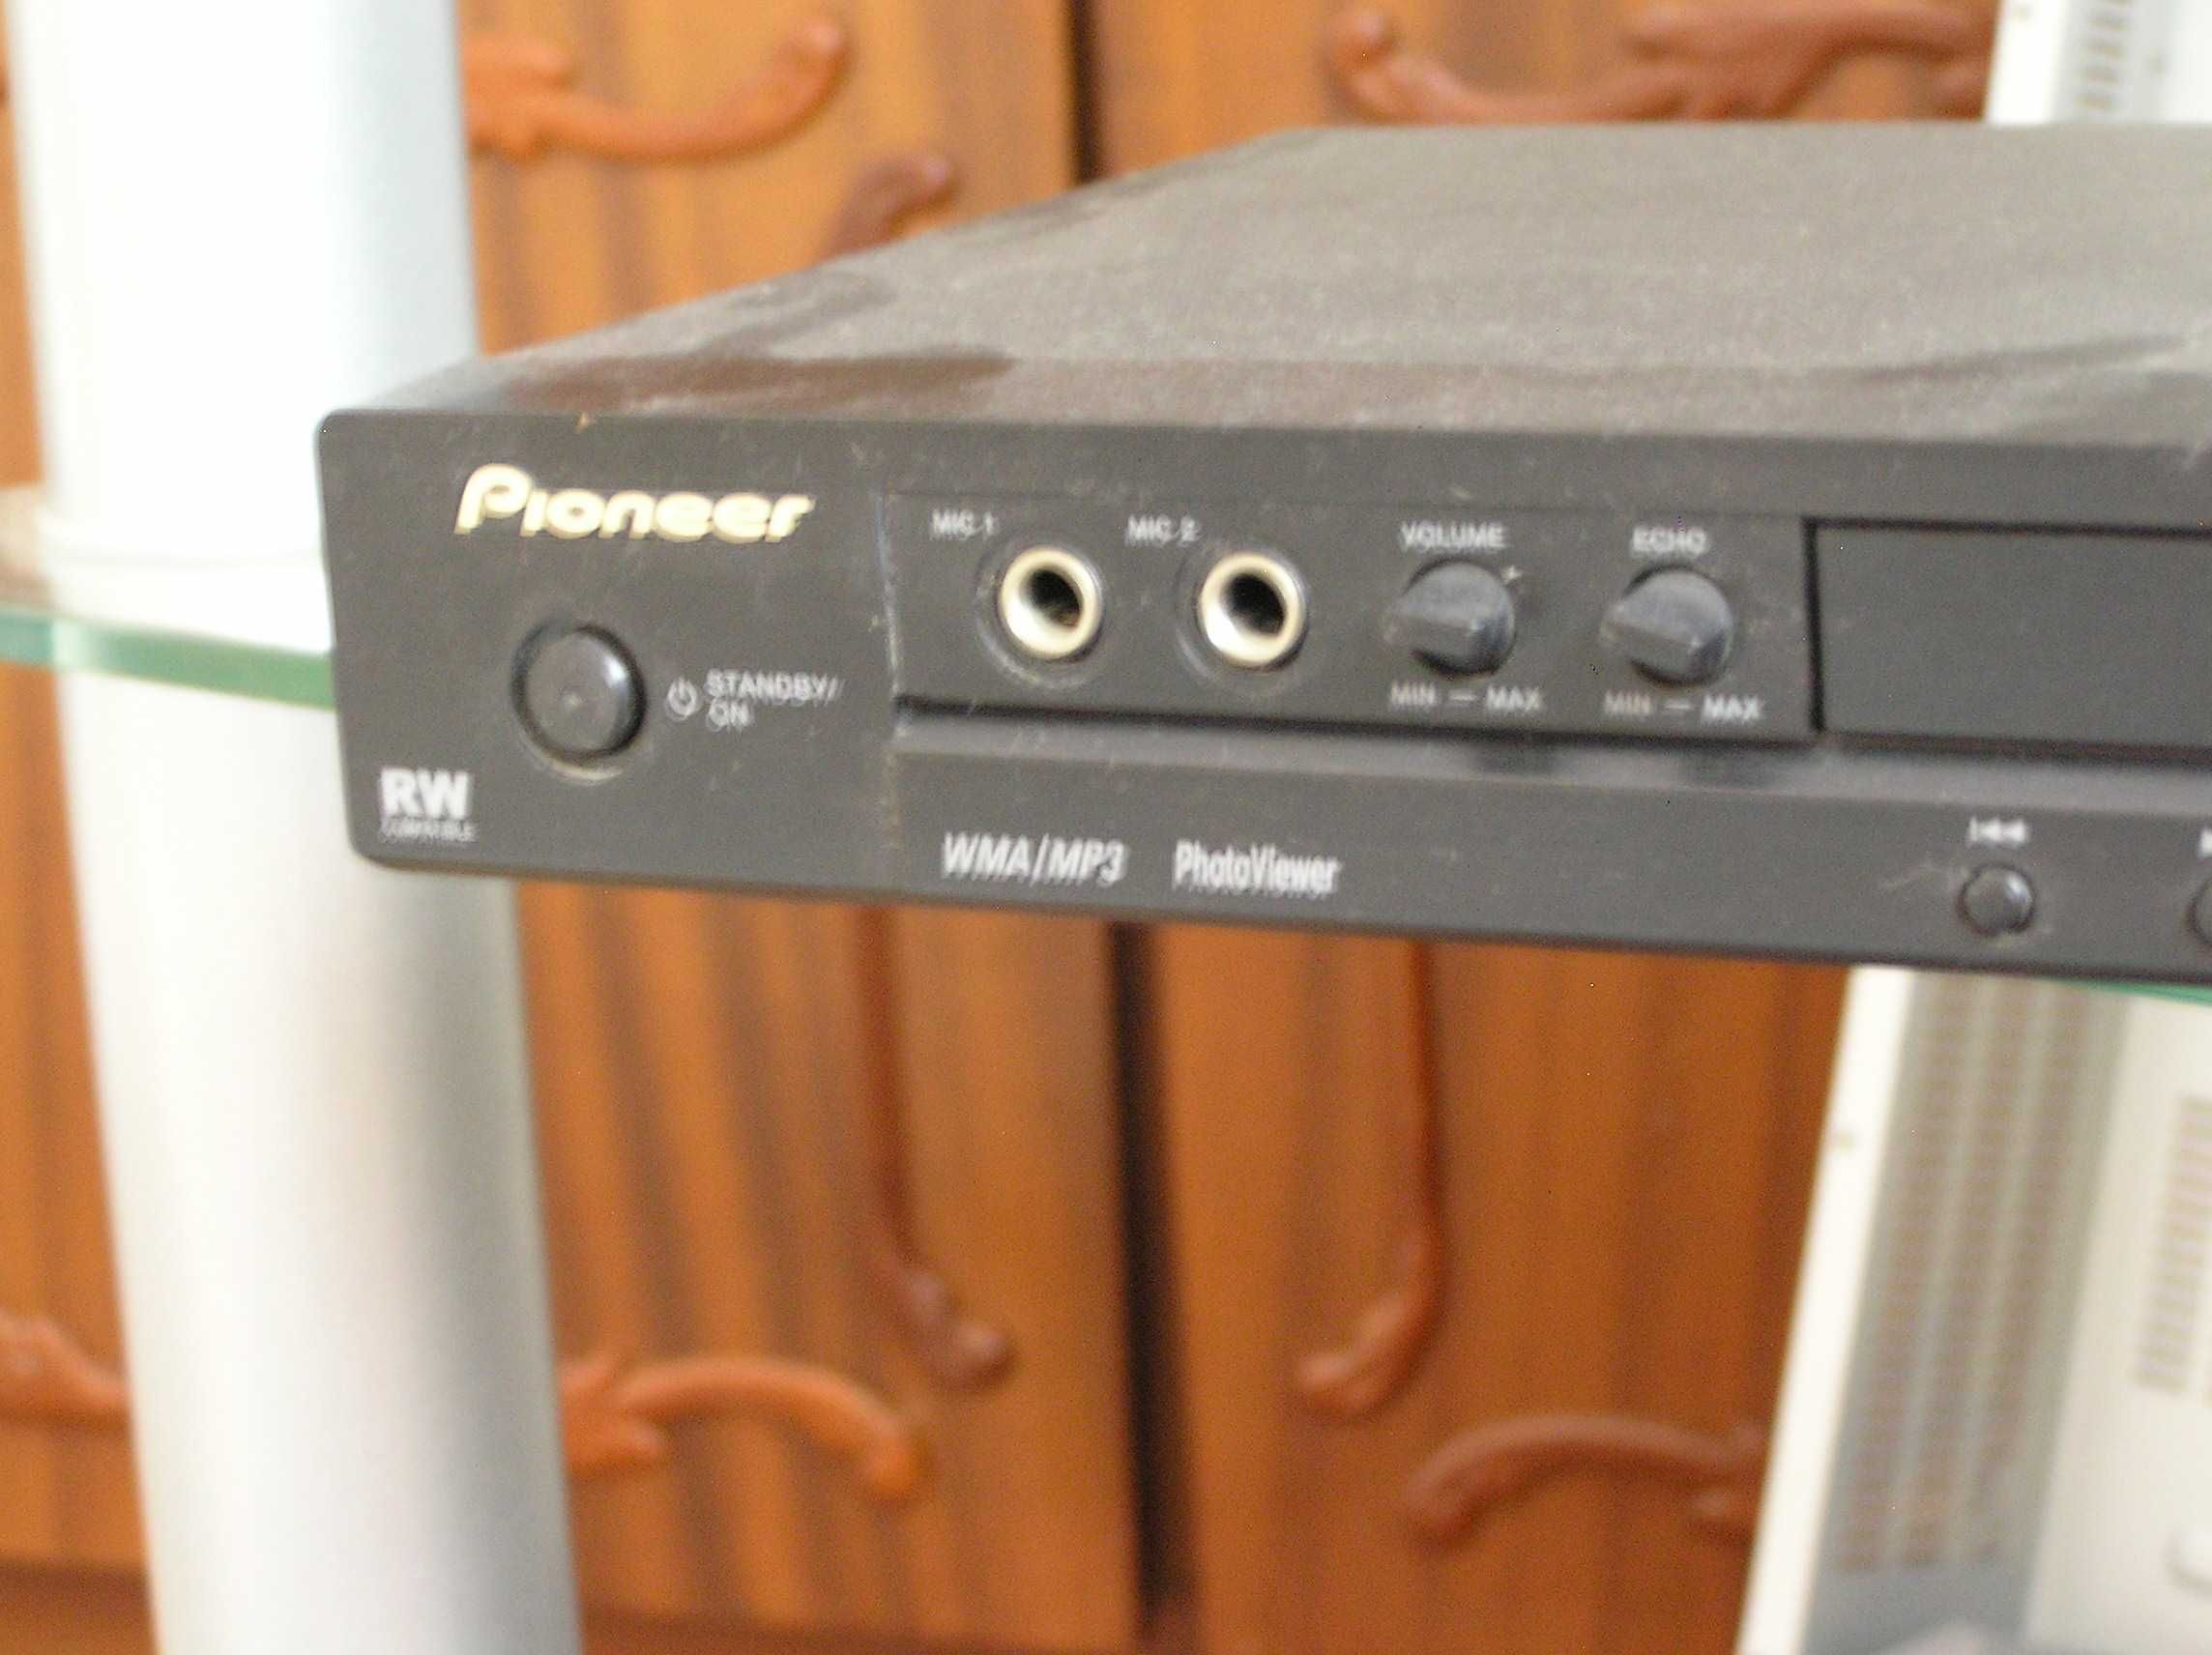 ДВД плеер Pioneer DV-500K в прекрасном рабочем состоянии